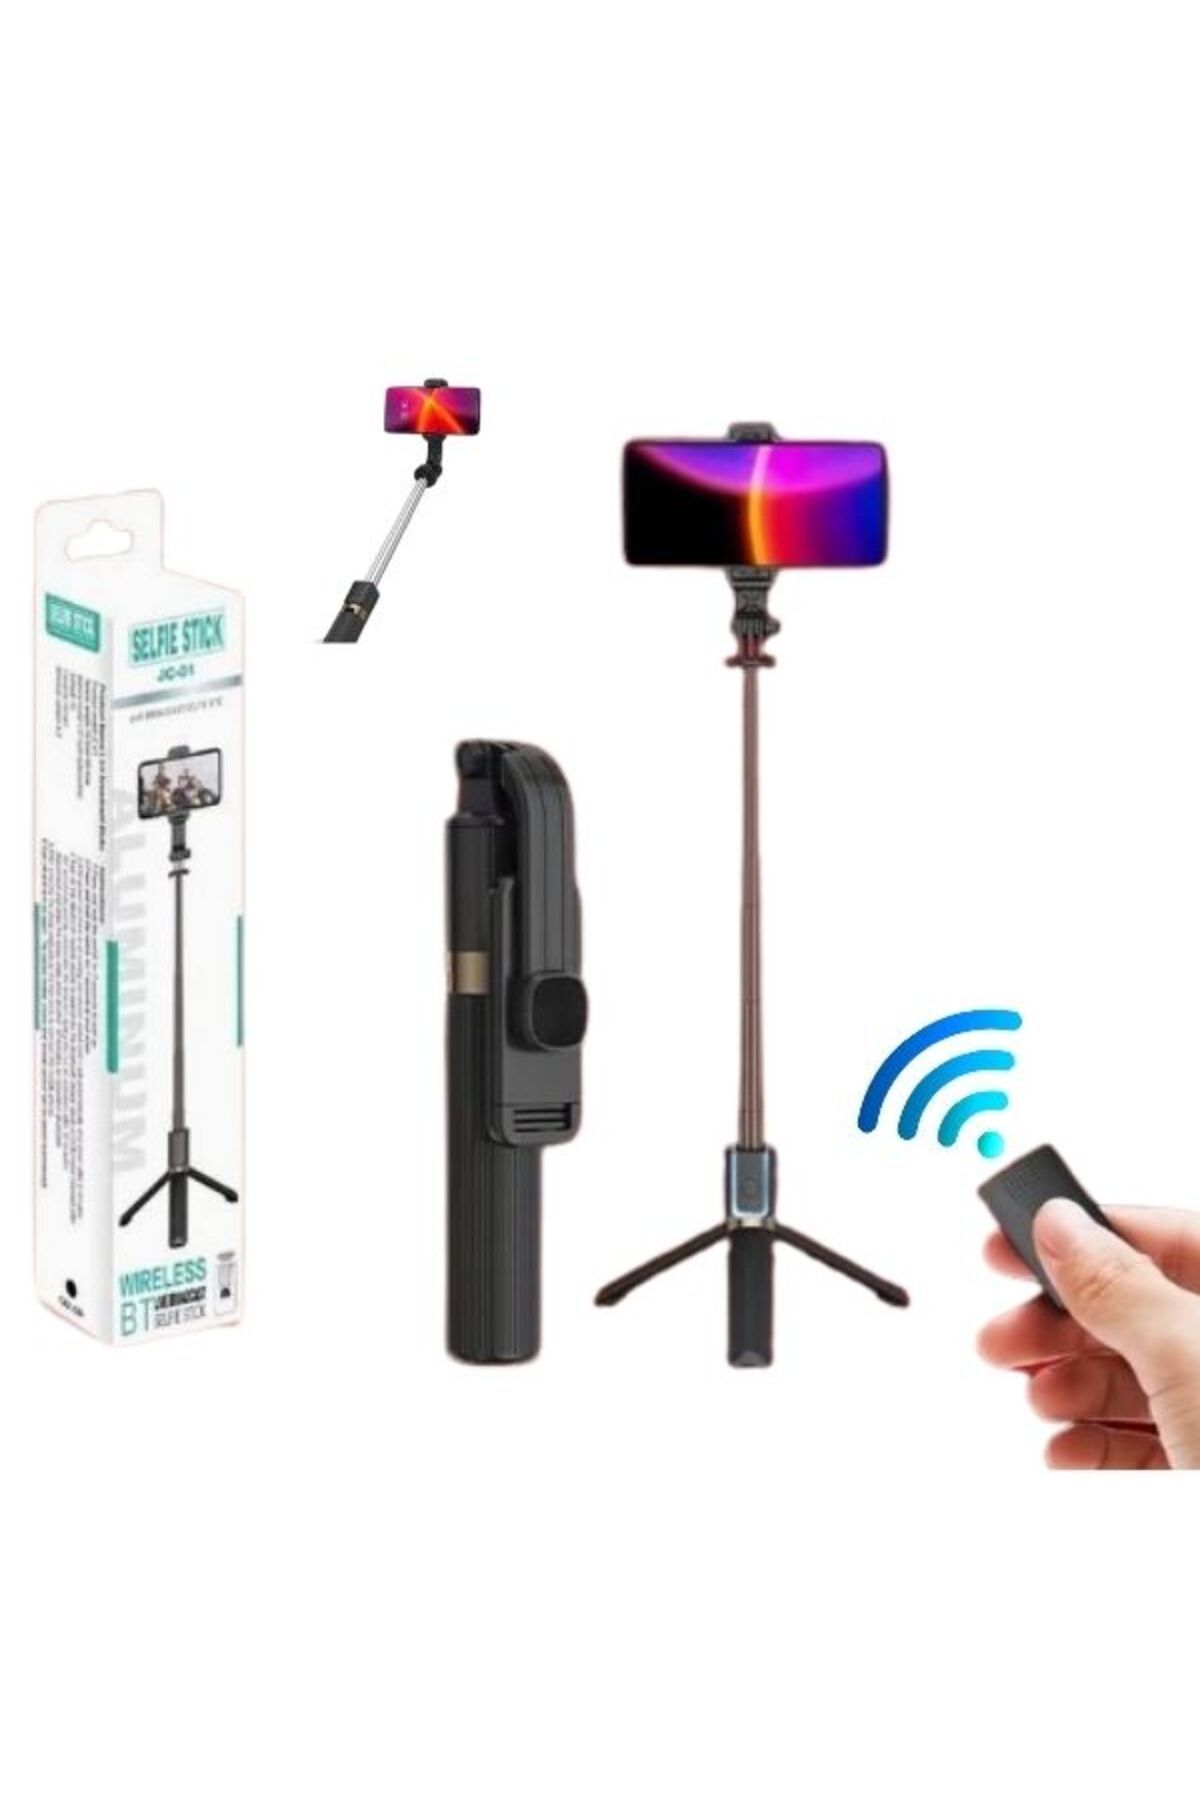 eyl techno uzunluk ayarlı tripodlu uzaktan kumandalı tüm telefonlarla uyumlu bluetooth selfie çubuğu